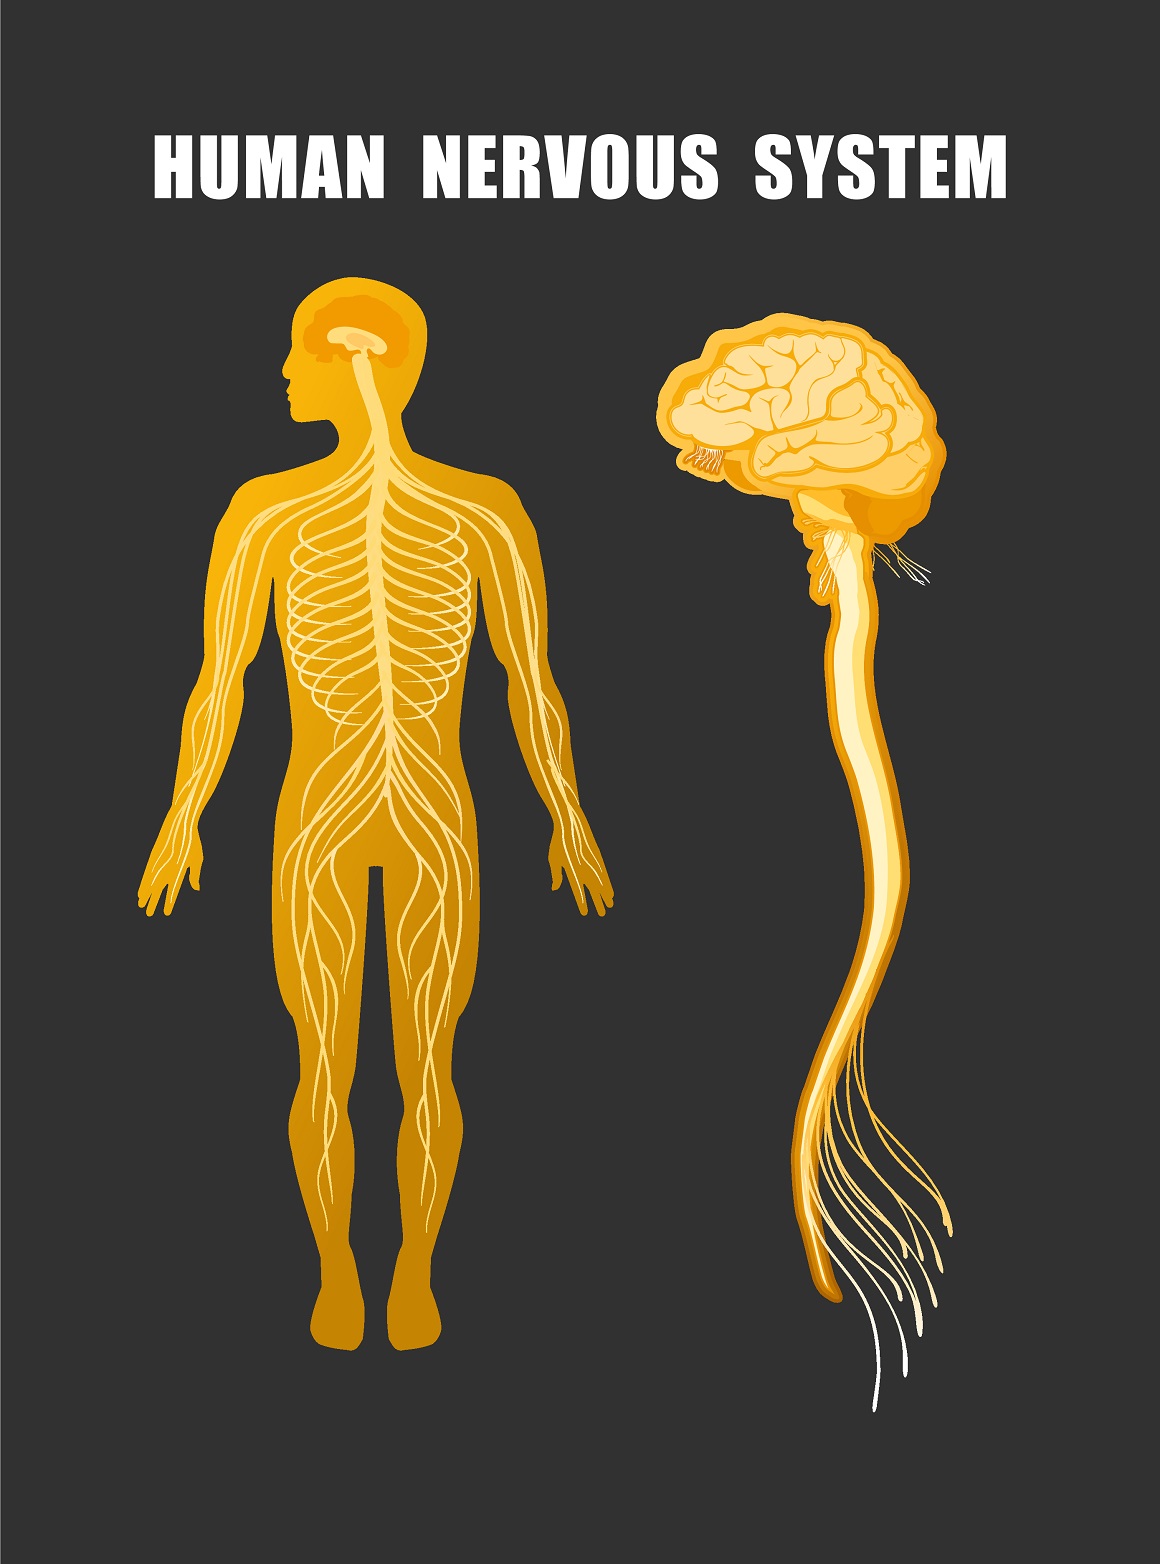 Naš živčani sustav je izrazito kompleksna i složena struktura koja prikuplja informacije iz cijelog tijela i koordinira funkcije i aktivnosti organizma